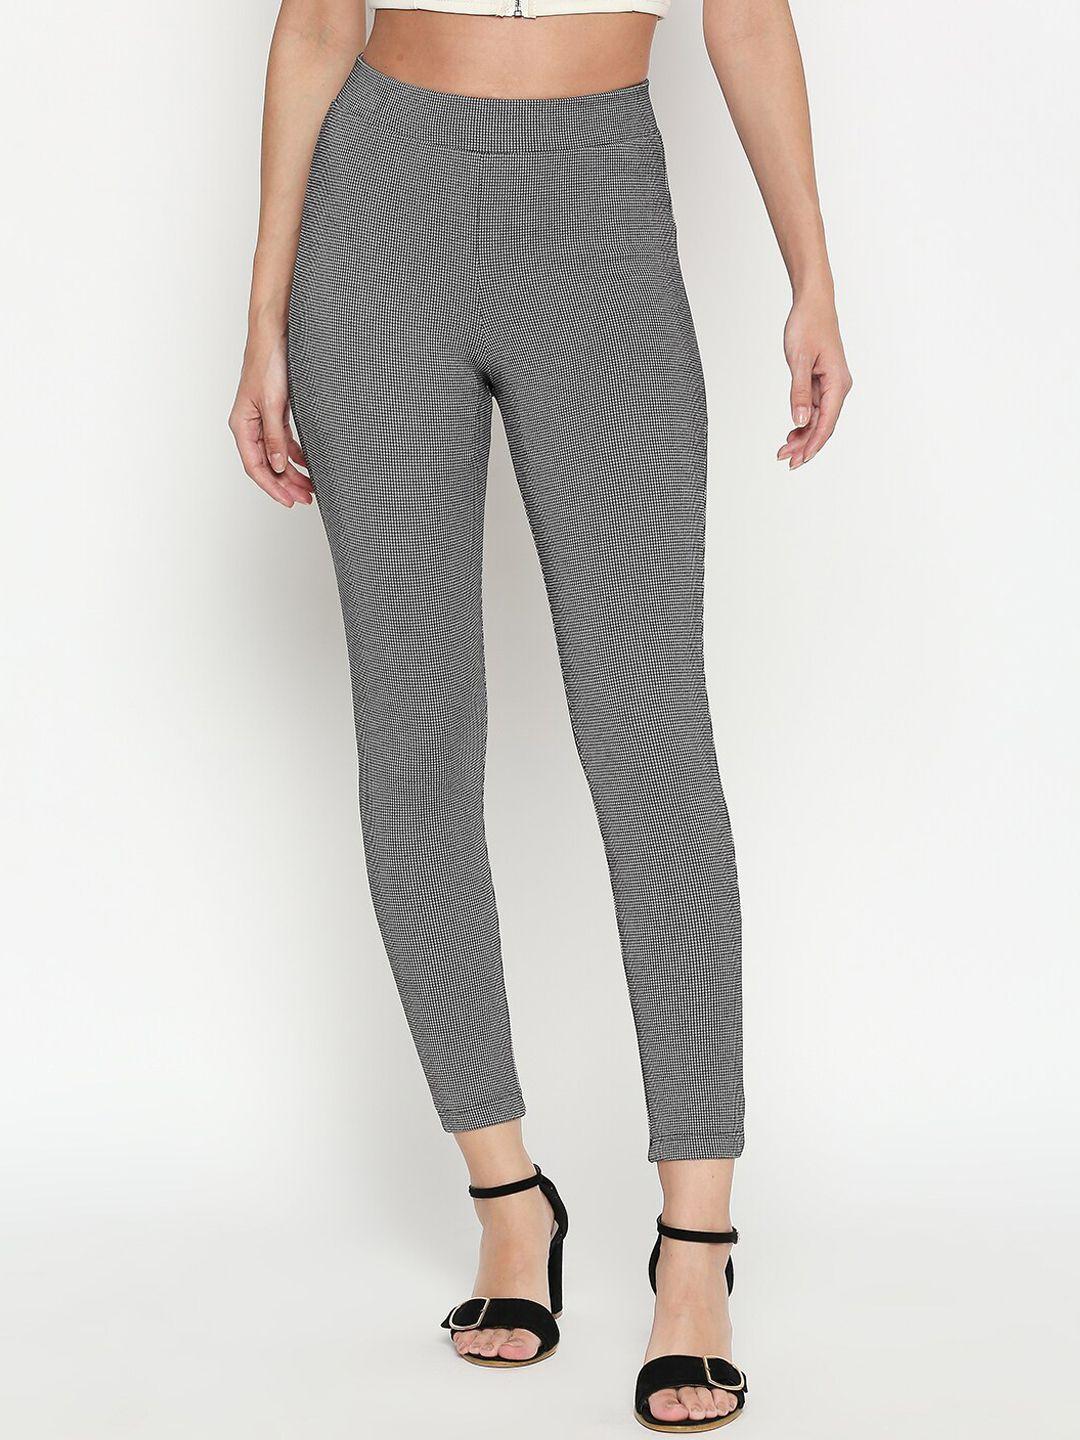 annabelle by pantaloons women black & white self design skinny fit treggings